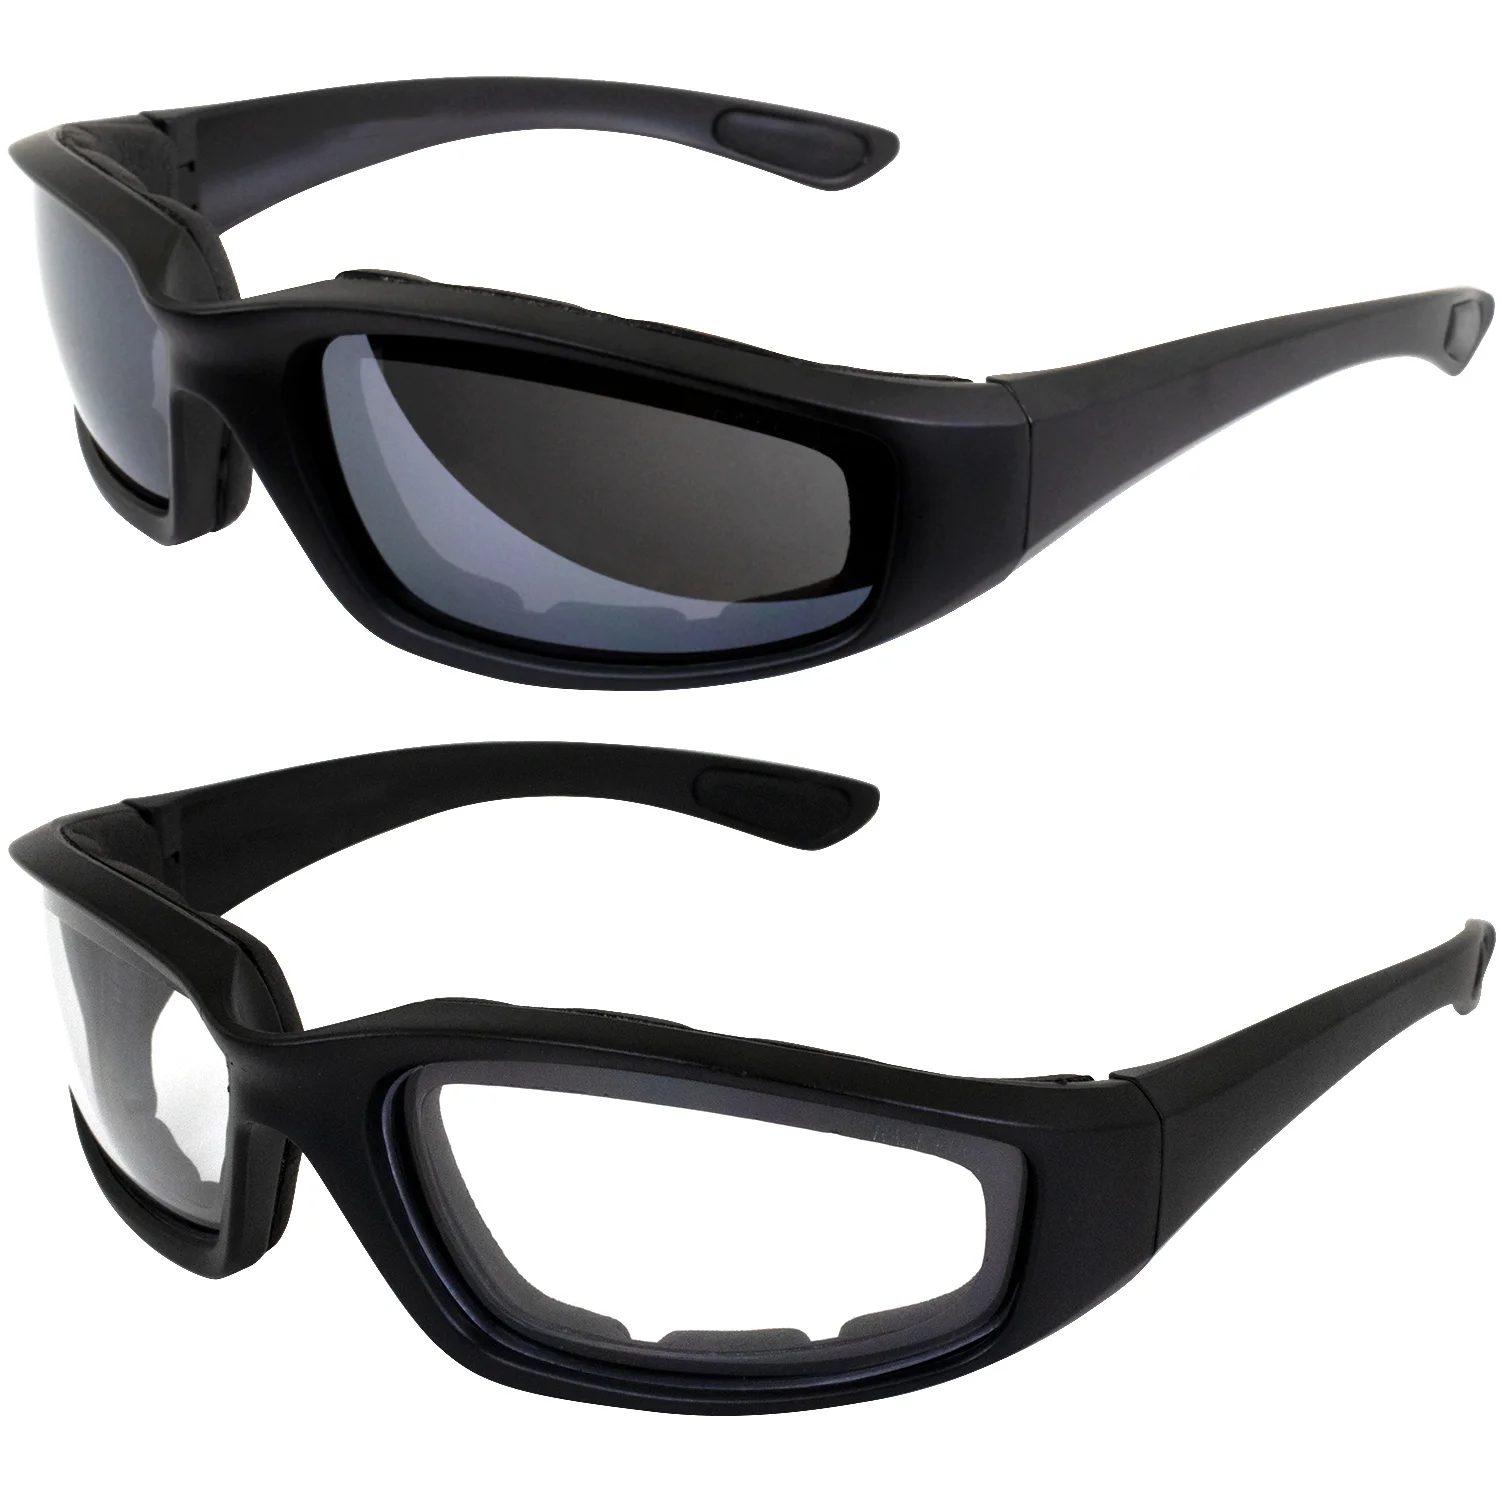 

Аксессуары для шлема, 2 пары очков, рандомные ANSI Z87, мягкие защитные очки для мотоцикла, черная оправа с прозрачными и дымчатыми линзами